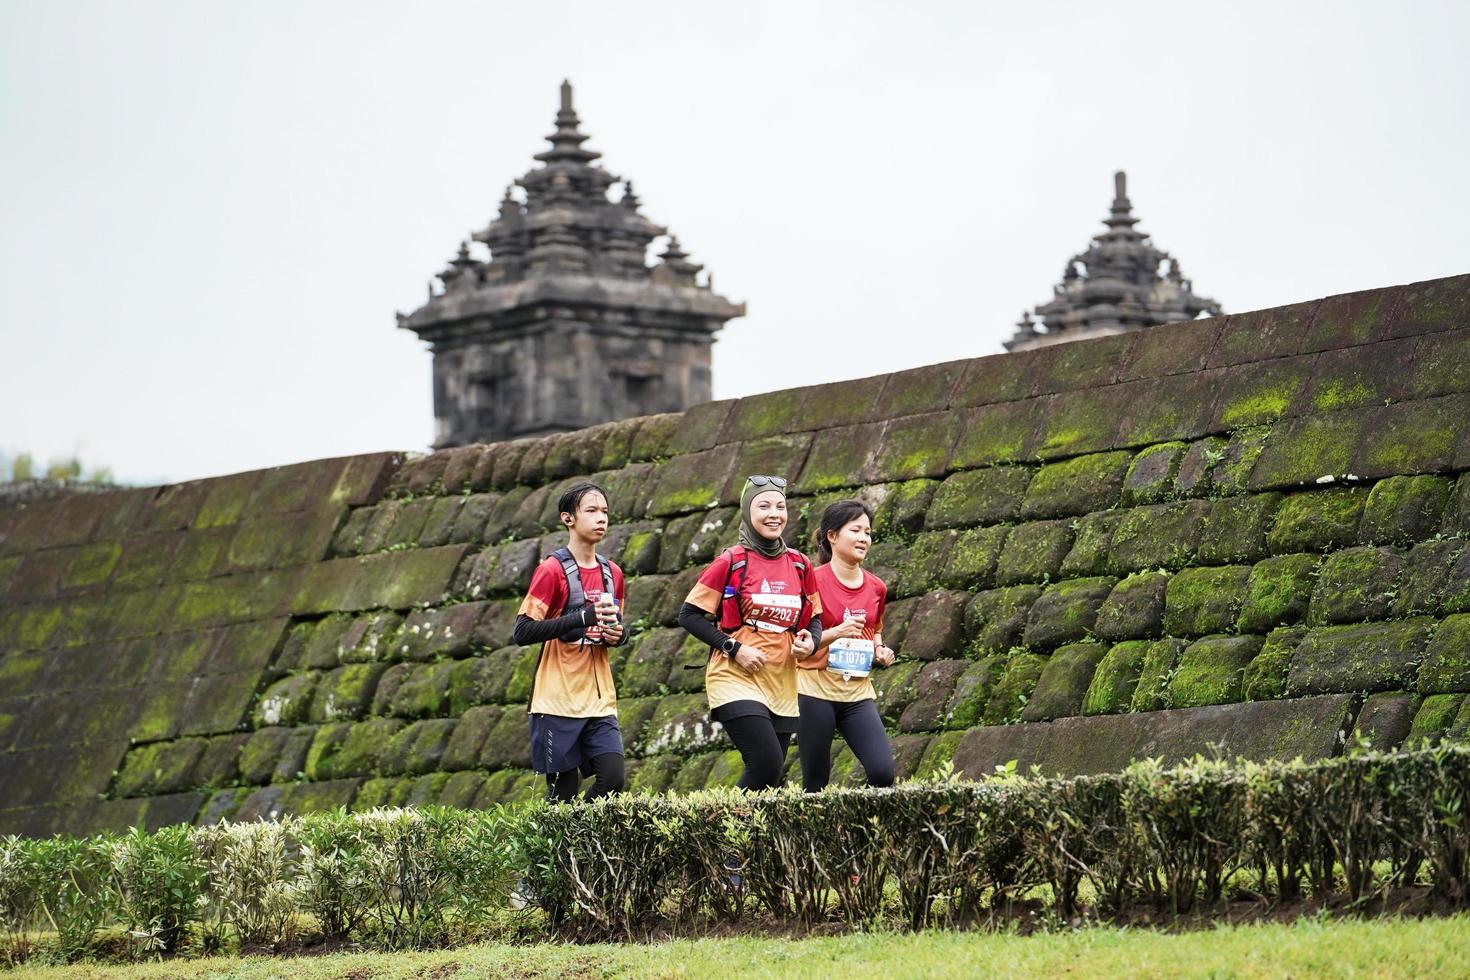 yogyakarta, indonesien - 20. november 2022 das laufkontingent des sleman-tempels passierte die malerische route des barong-tempels, sie nahmen an einem trailrunning-wettbewerb teil. foto